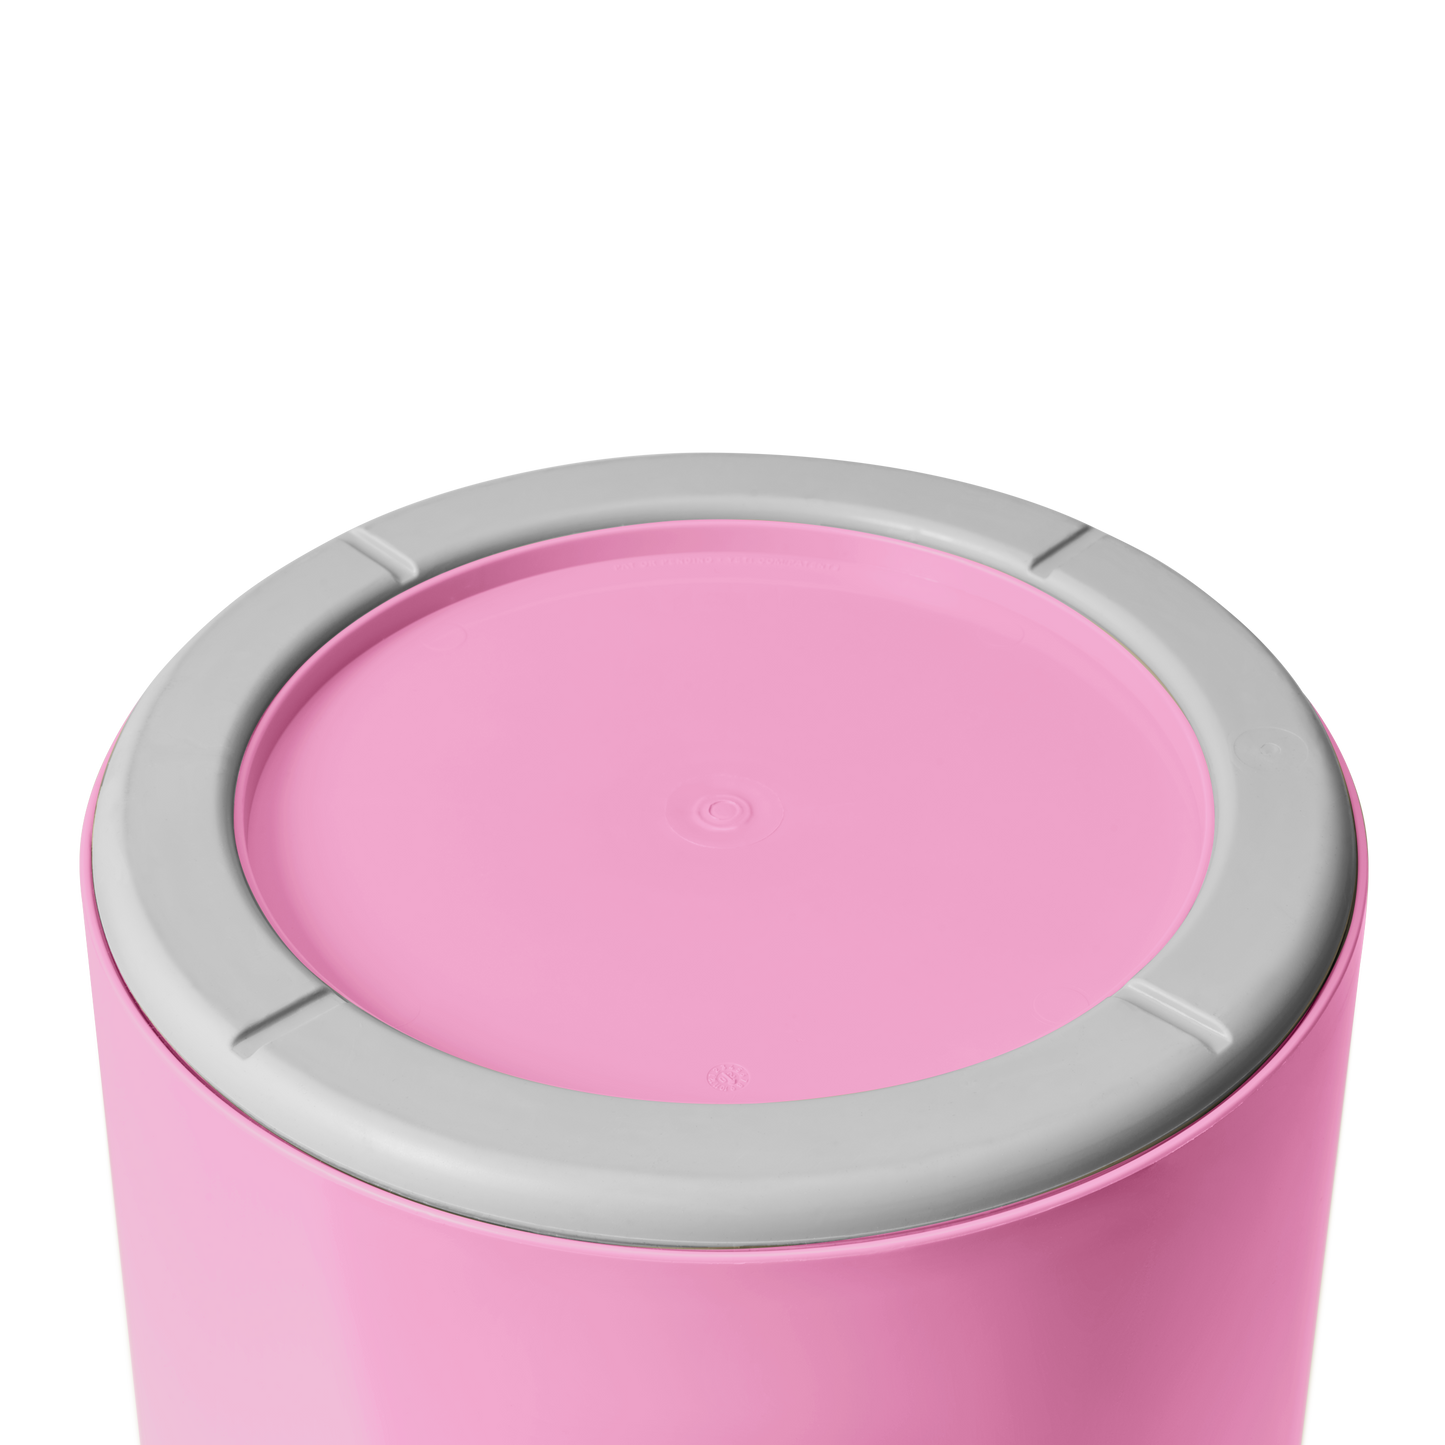 YETI LoadOut® Secchio da 5 galloni (19,9 L) Power Pink